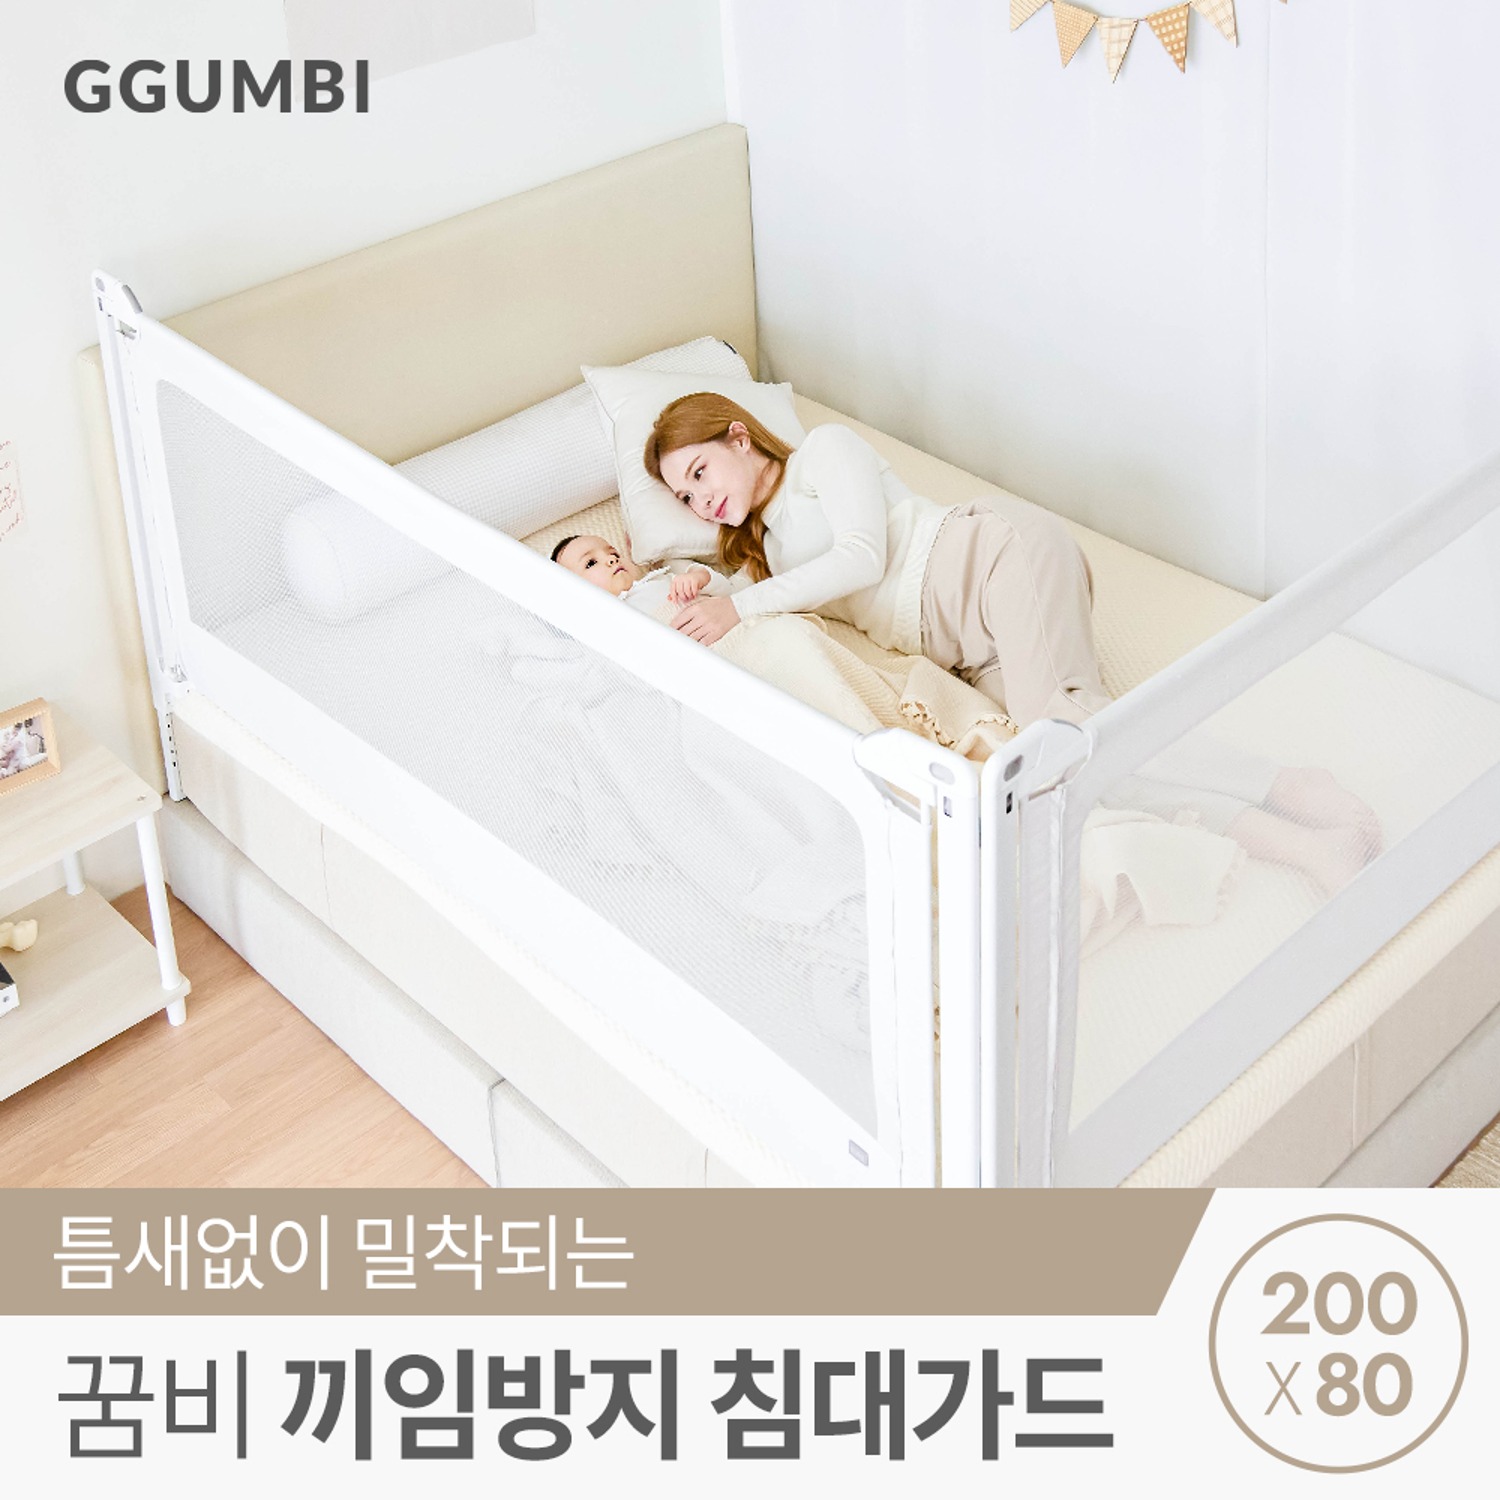 [꿈비] 끼임방지 아기 침대 패밀리 안전 가드 200x80cm